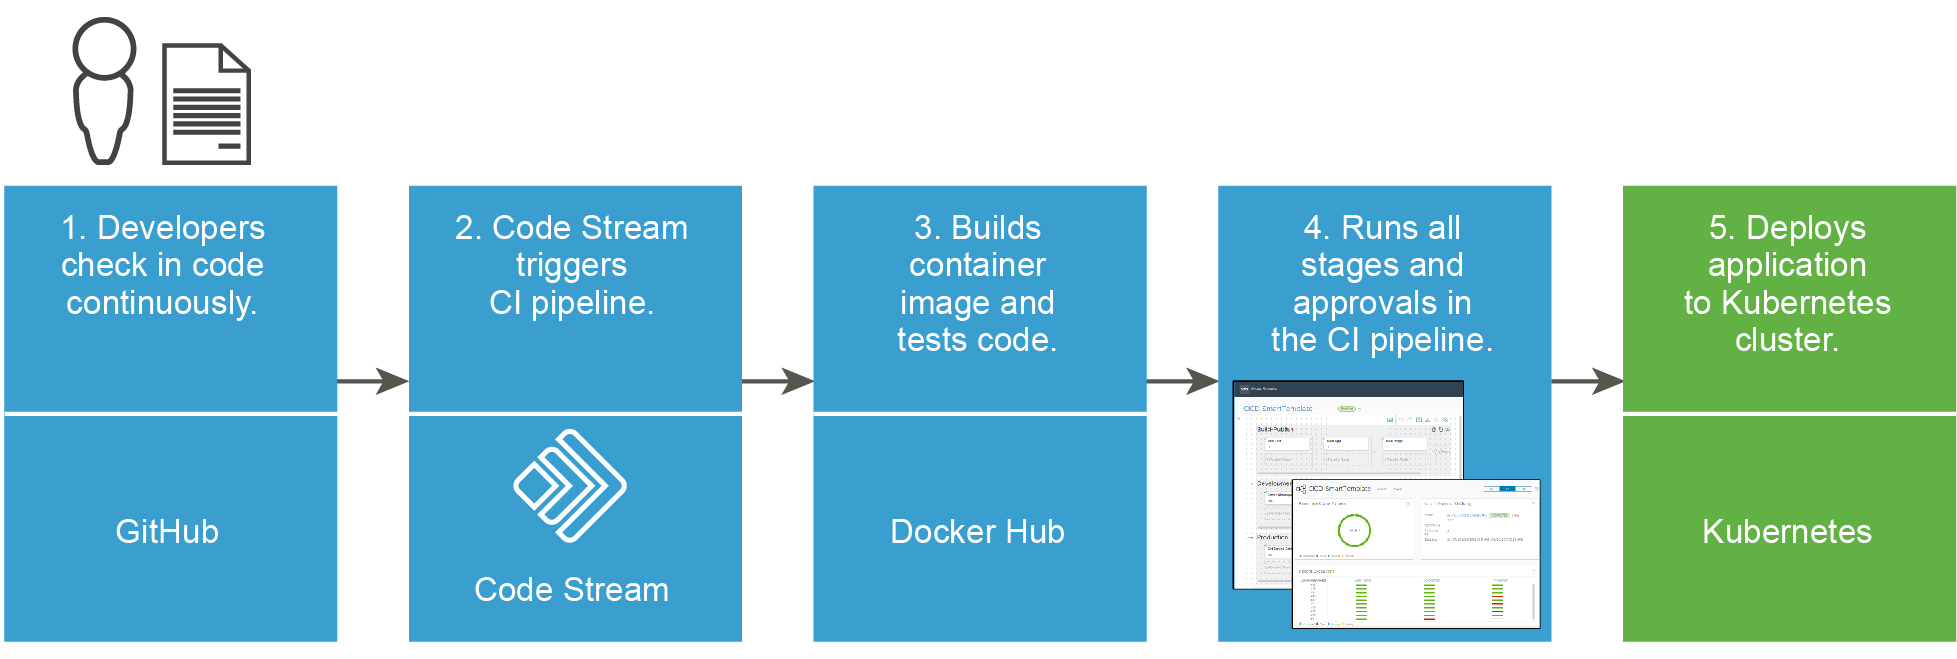 Il workflow da un'archiviazione di codice a un'applicazione distribuita in un cluster Kubernetes può utilizzare GitHub, Code Stream, Docker Hub, il trigger per Git e Kubernetes.